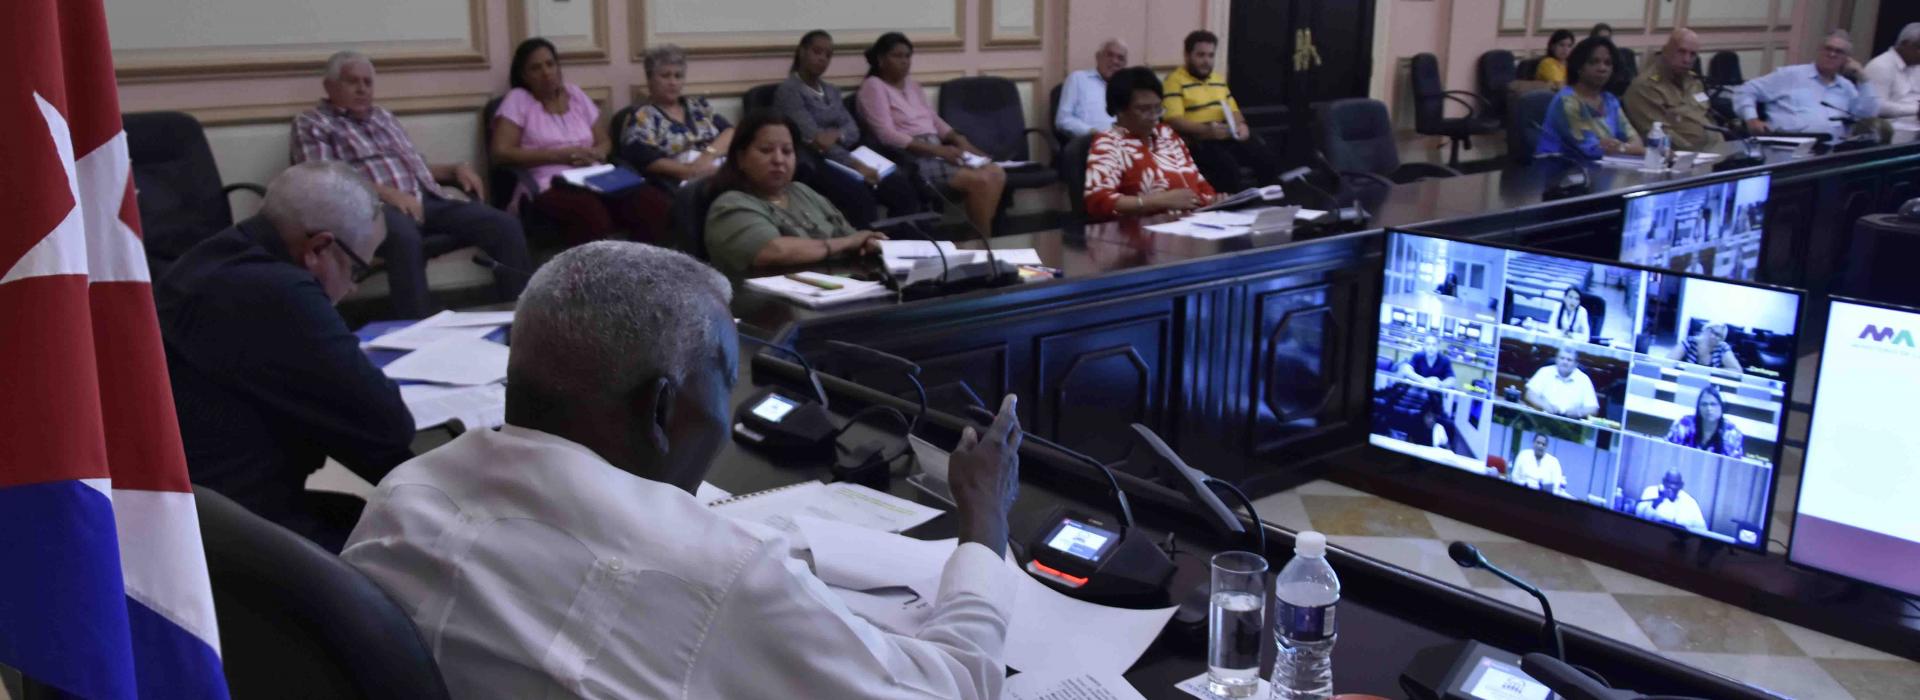 Sesión del Consejo de Estado de la República de Cuba